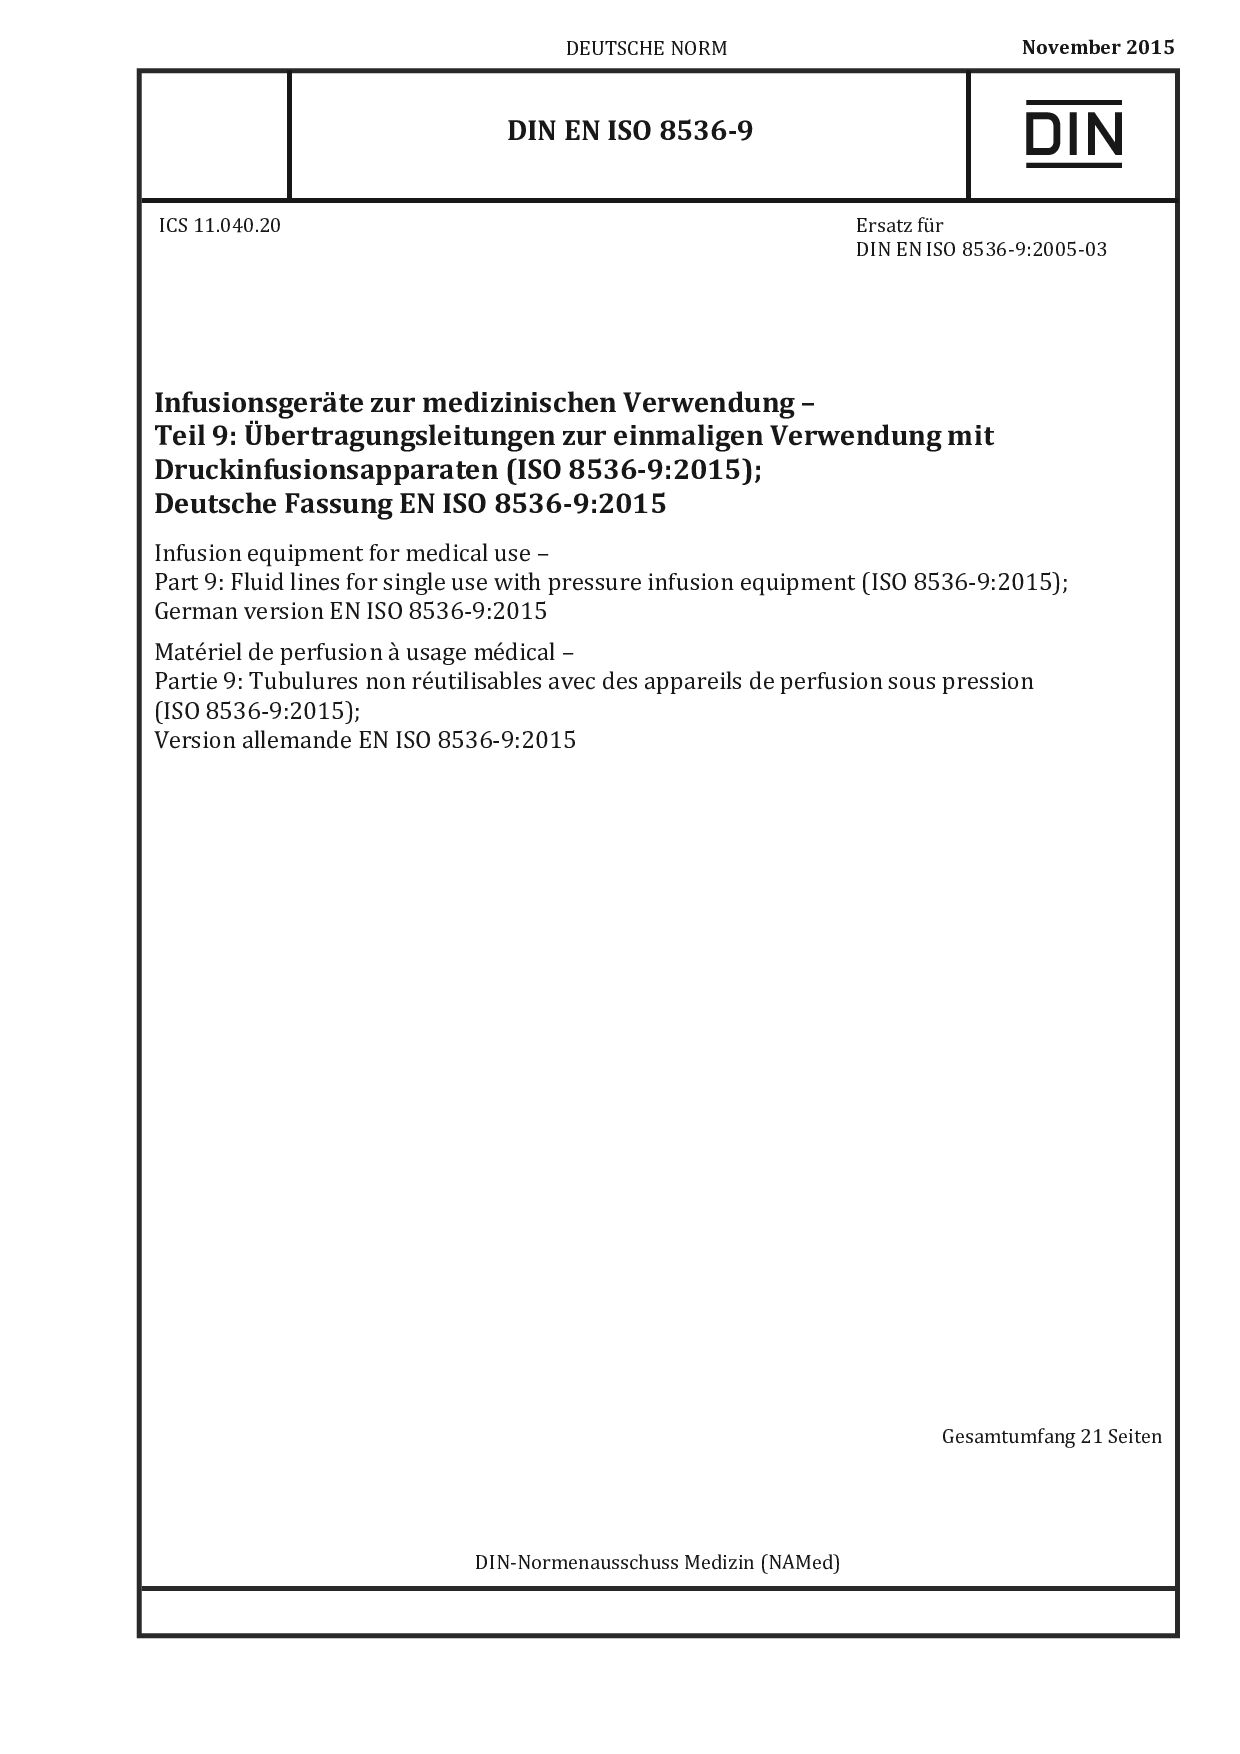 DIN EN ISO 8536-9:2015